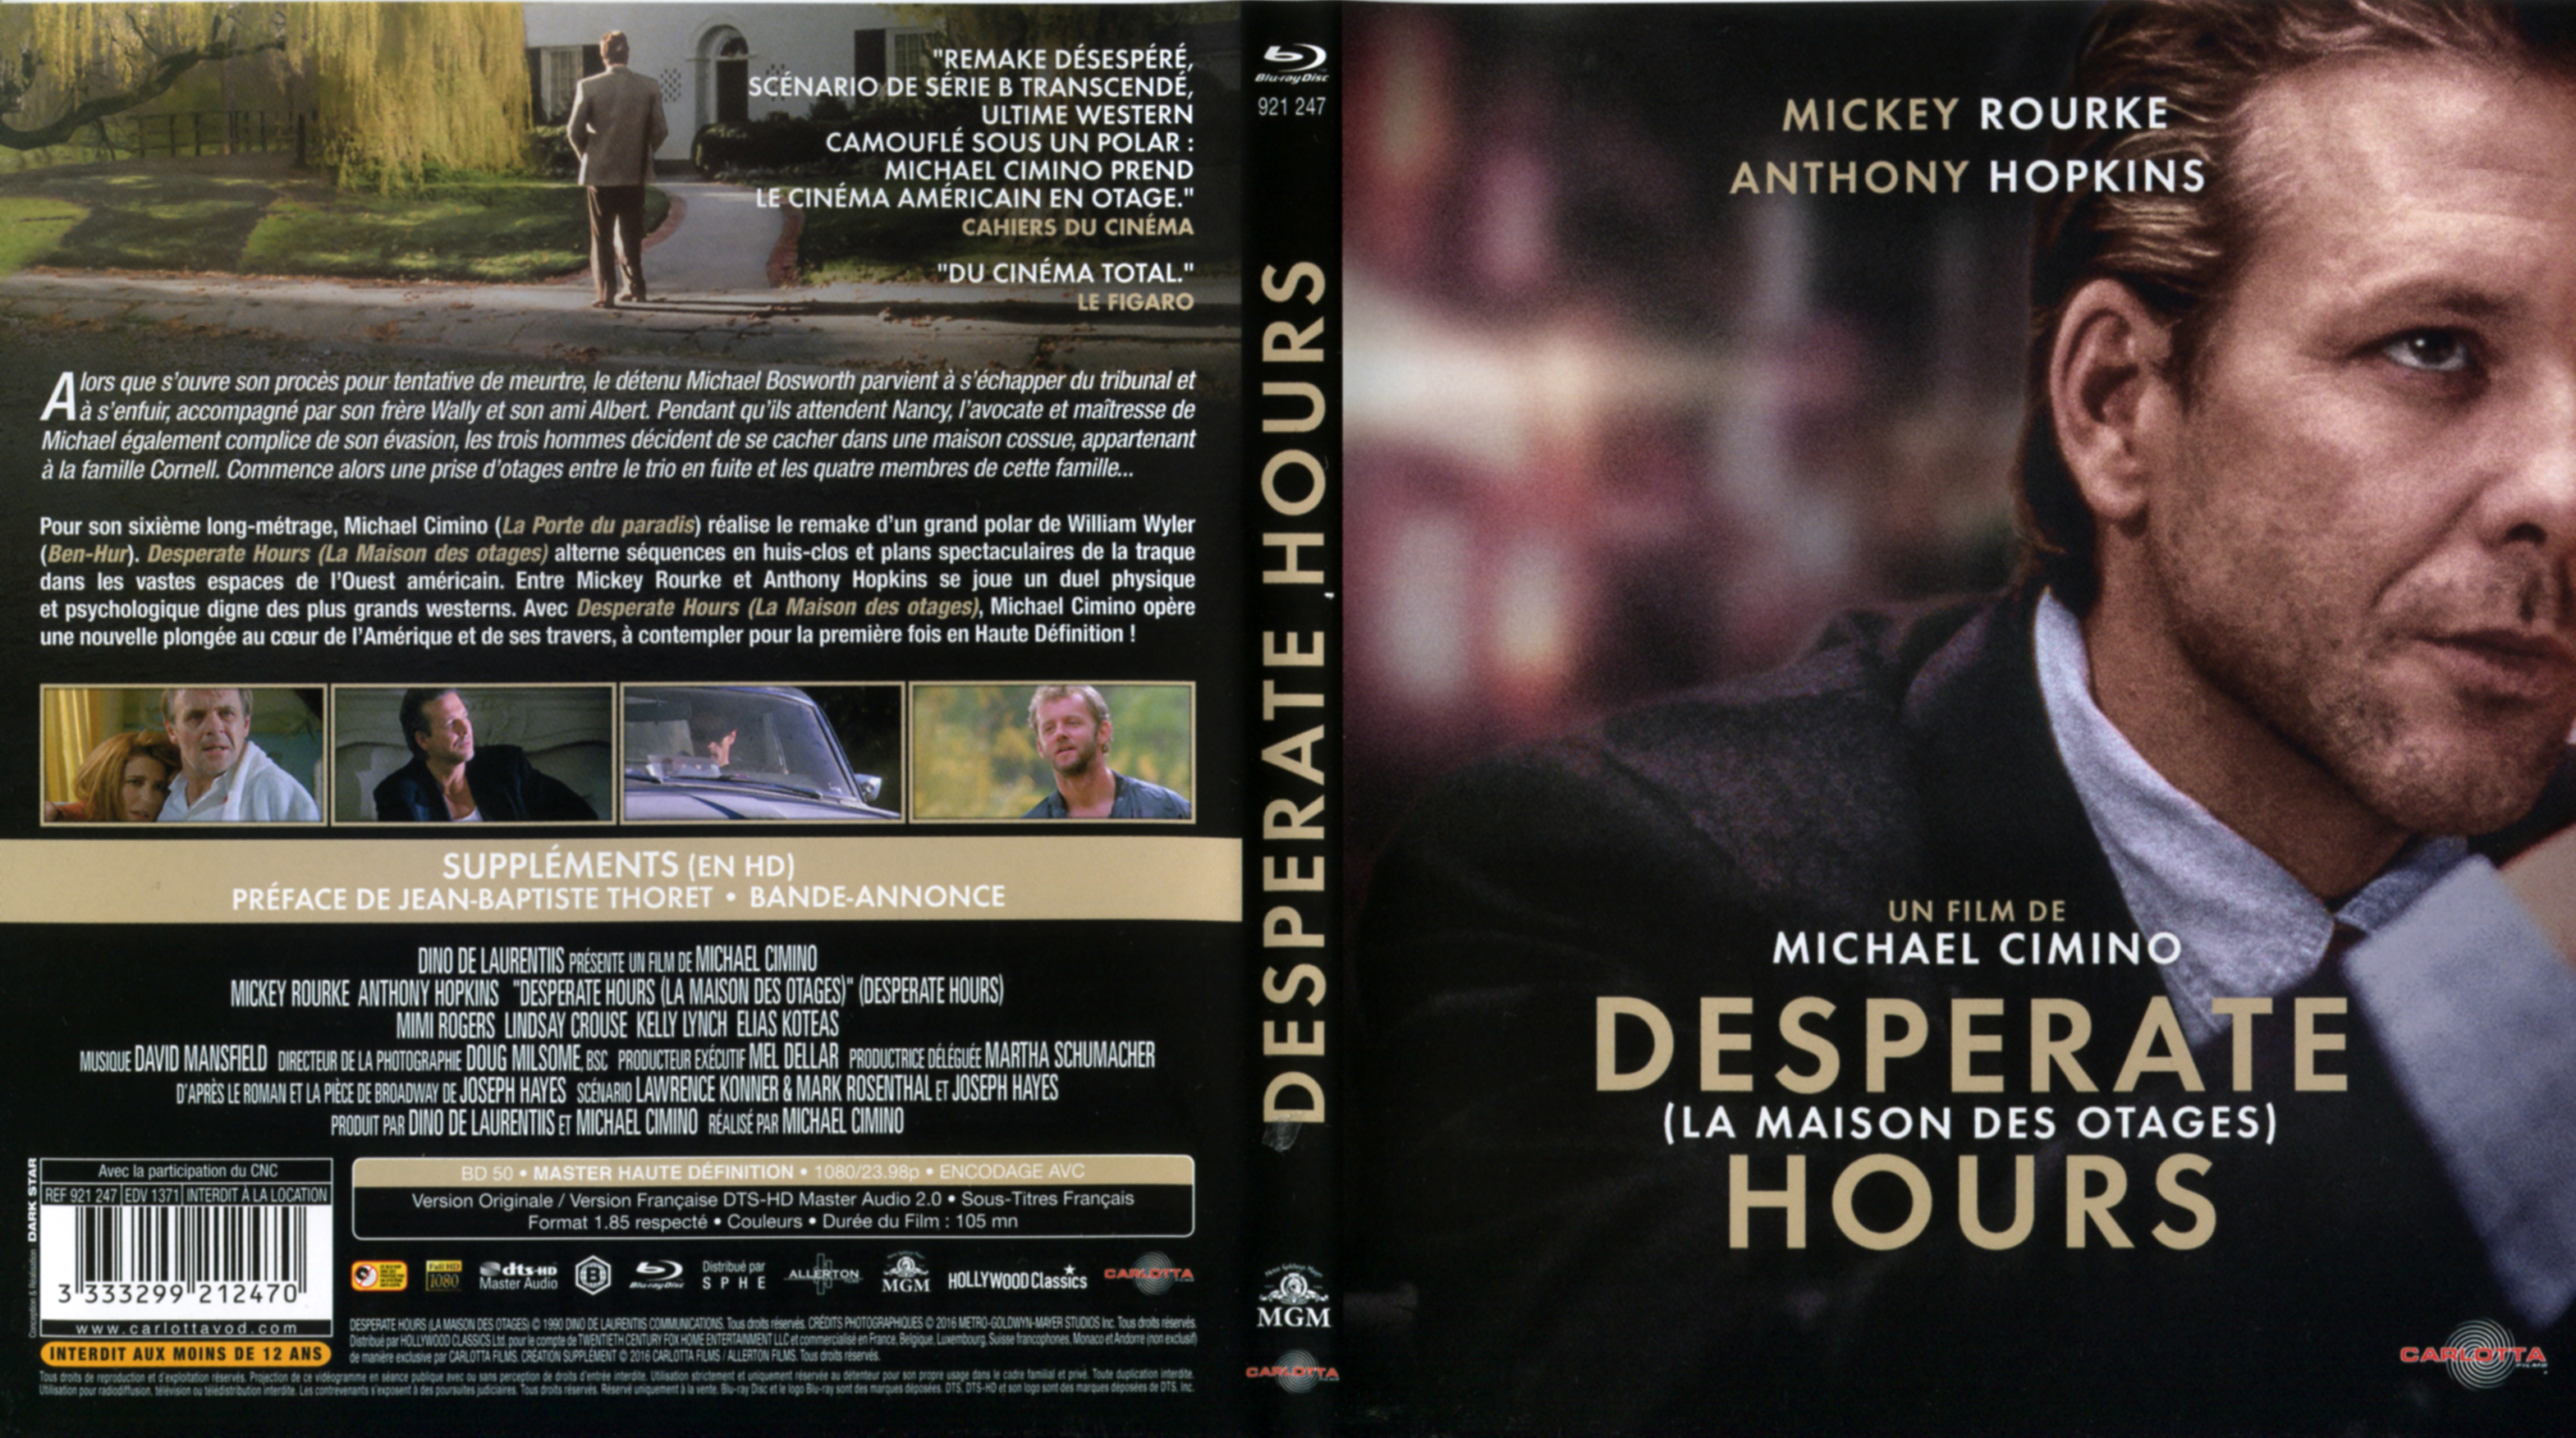 Jaquette DVD Desperate hours - La maison des otages (BLU-RAY)